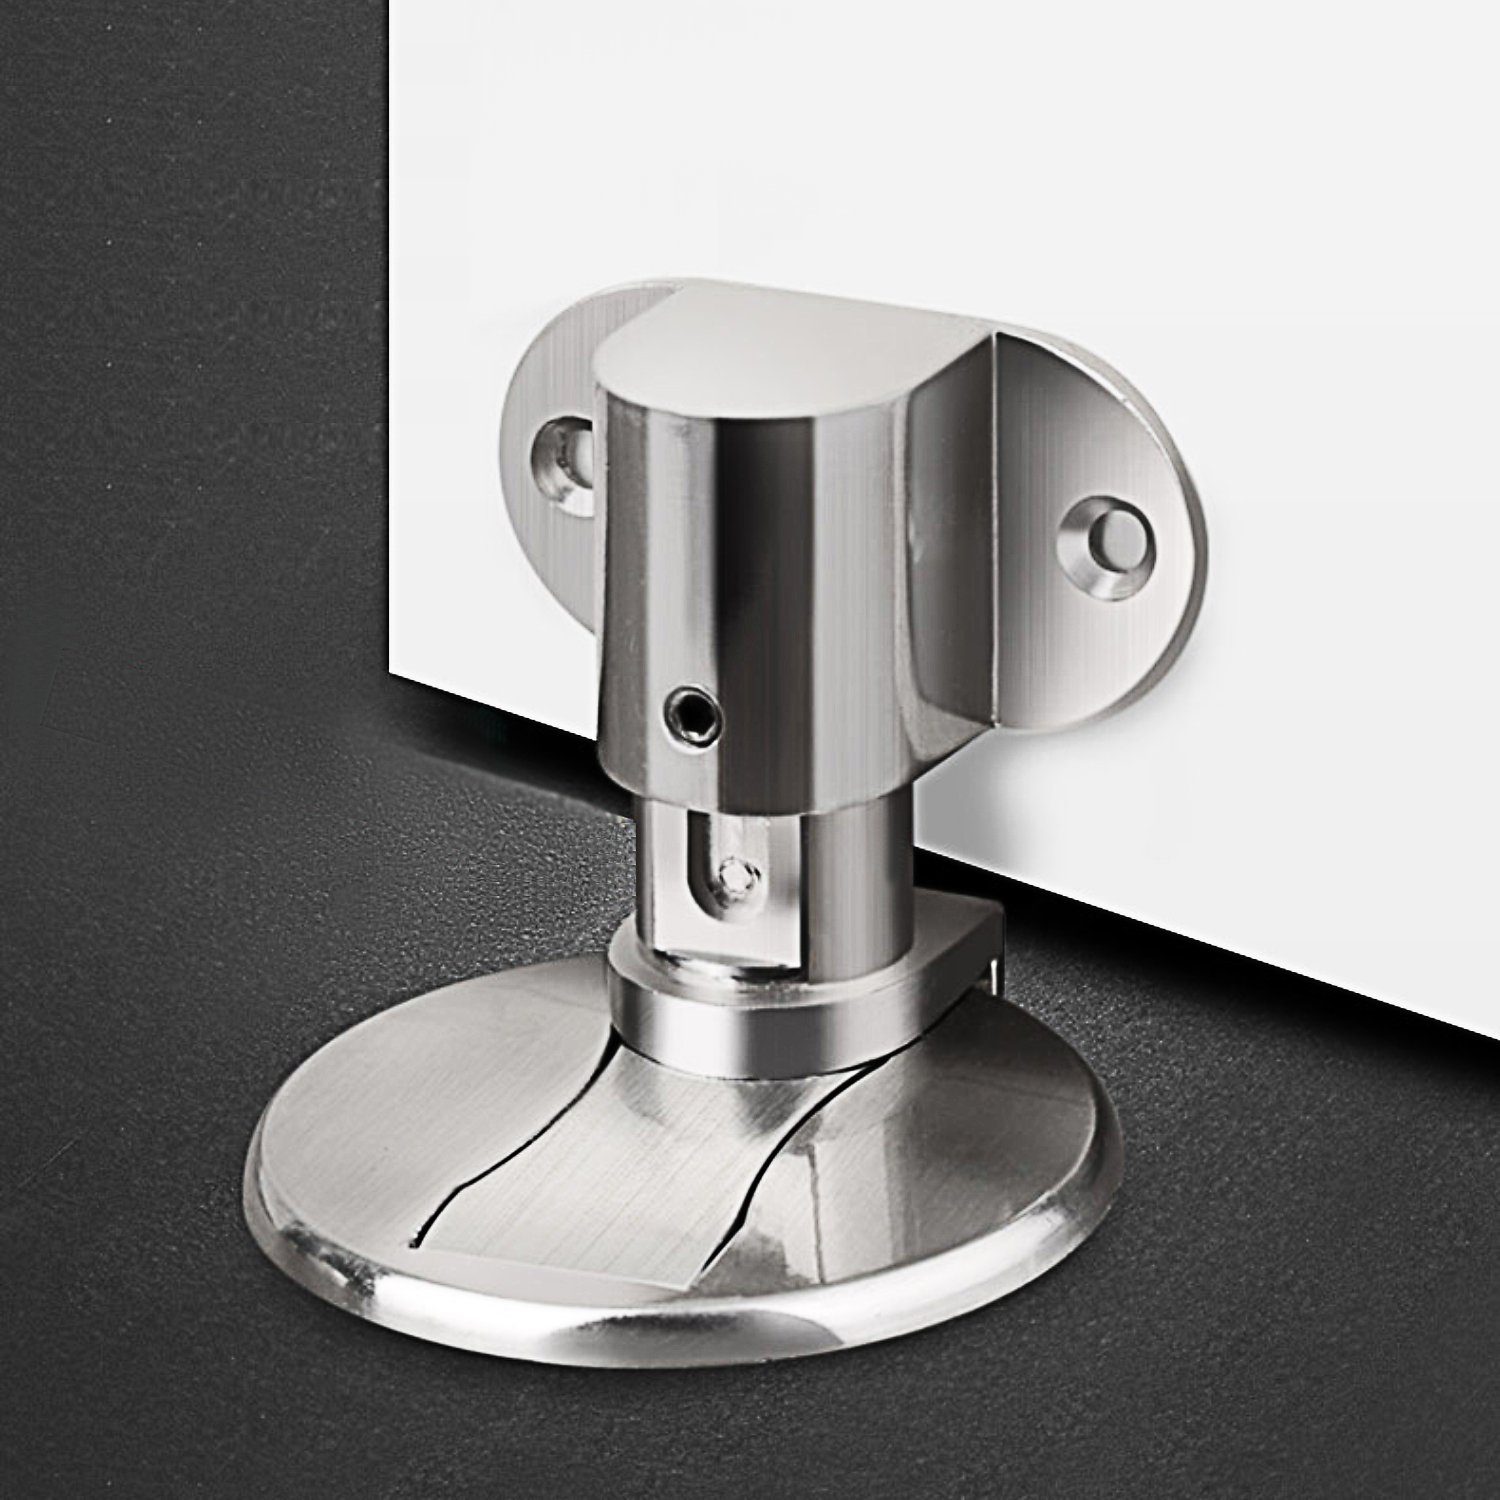 Ailiebe Design Türstopper (kleben oder bohren), Magnet Edelstahl  selbstklebend höhenverstellbar Türfeststeller online kaufen | OTTO